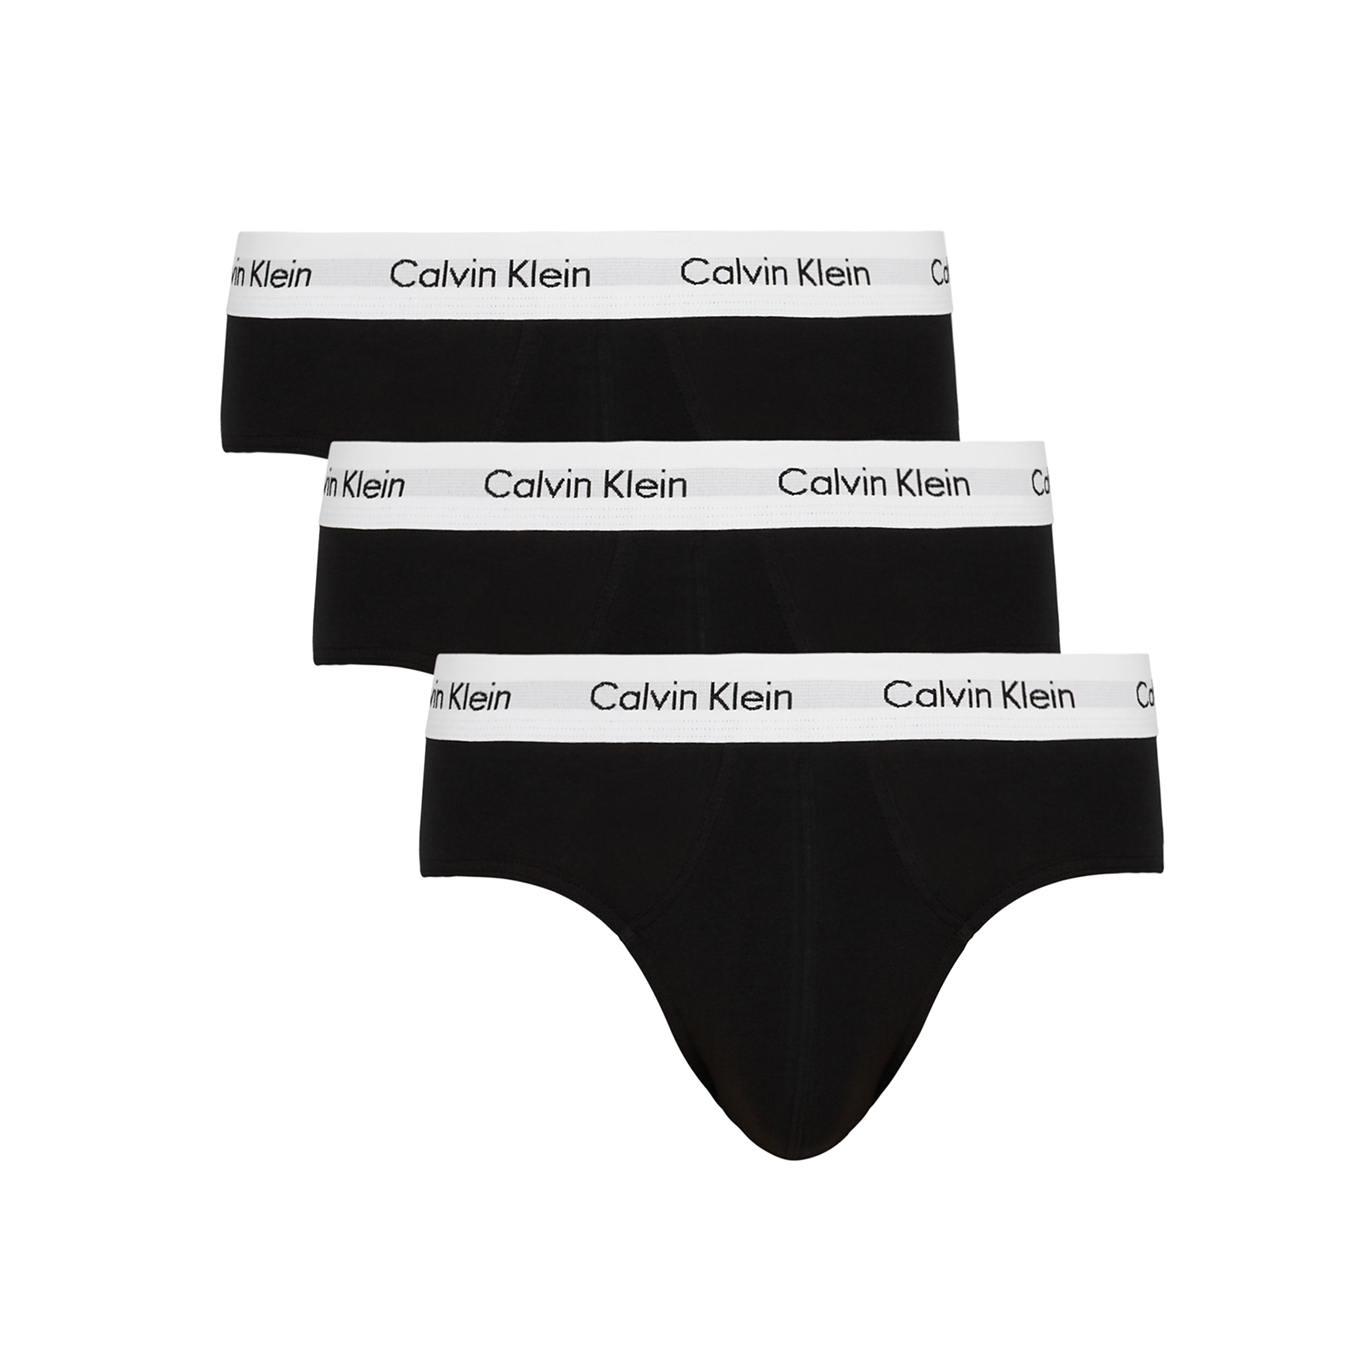 Calvin Klein Black Stretch Cotton Briefs - Set Of Three - S